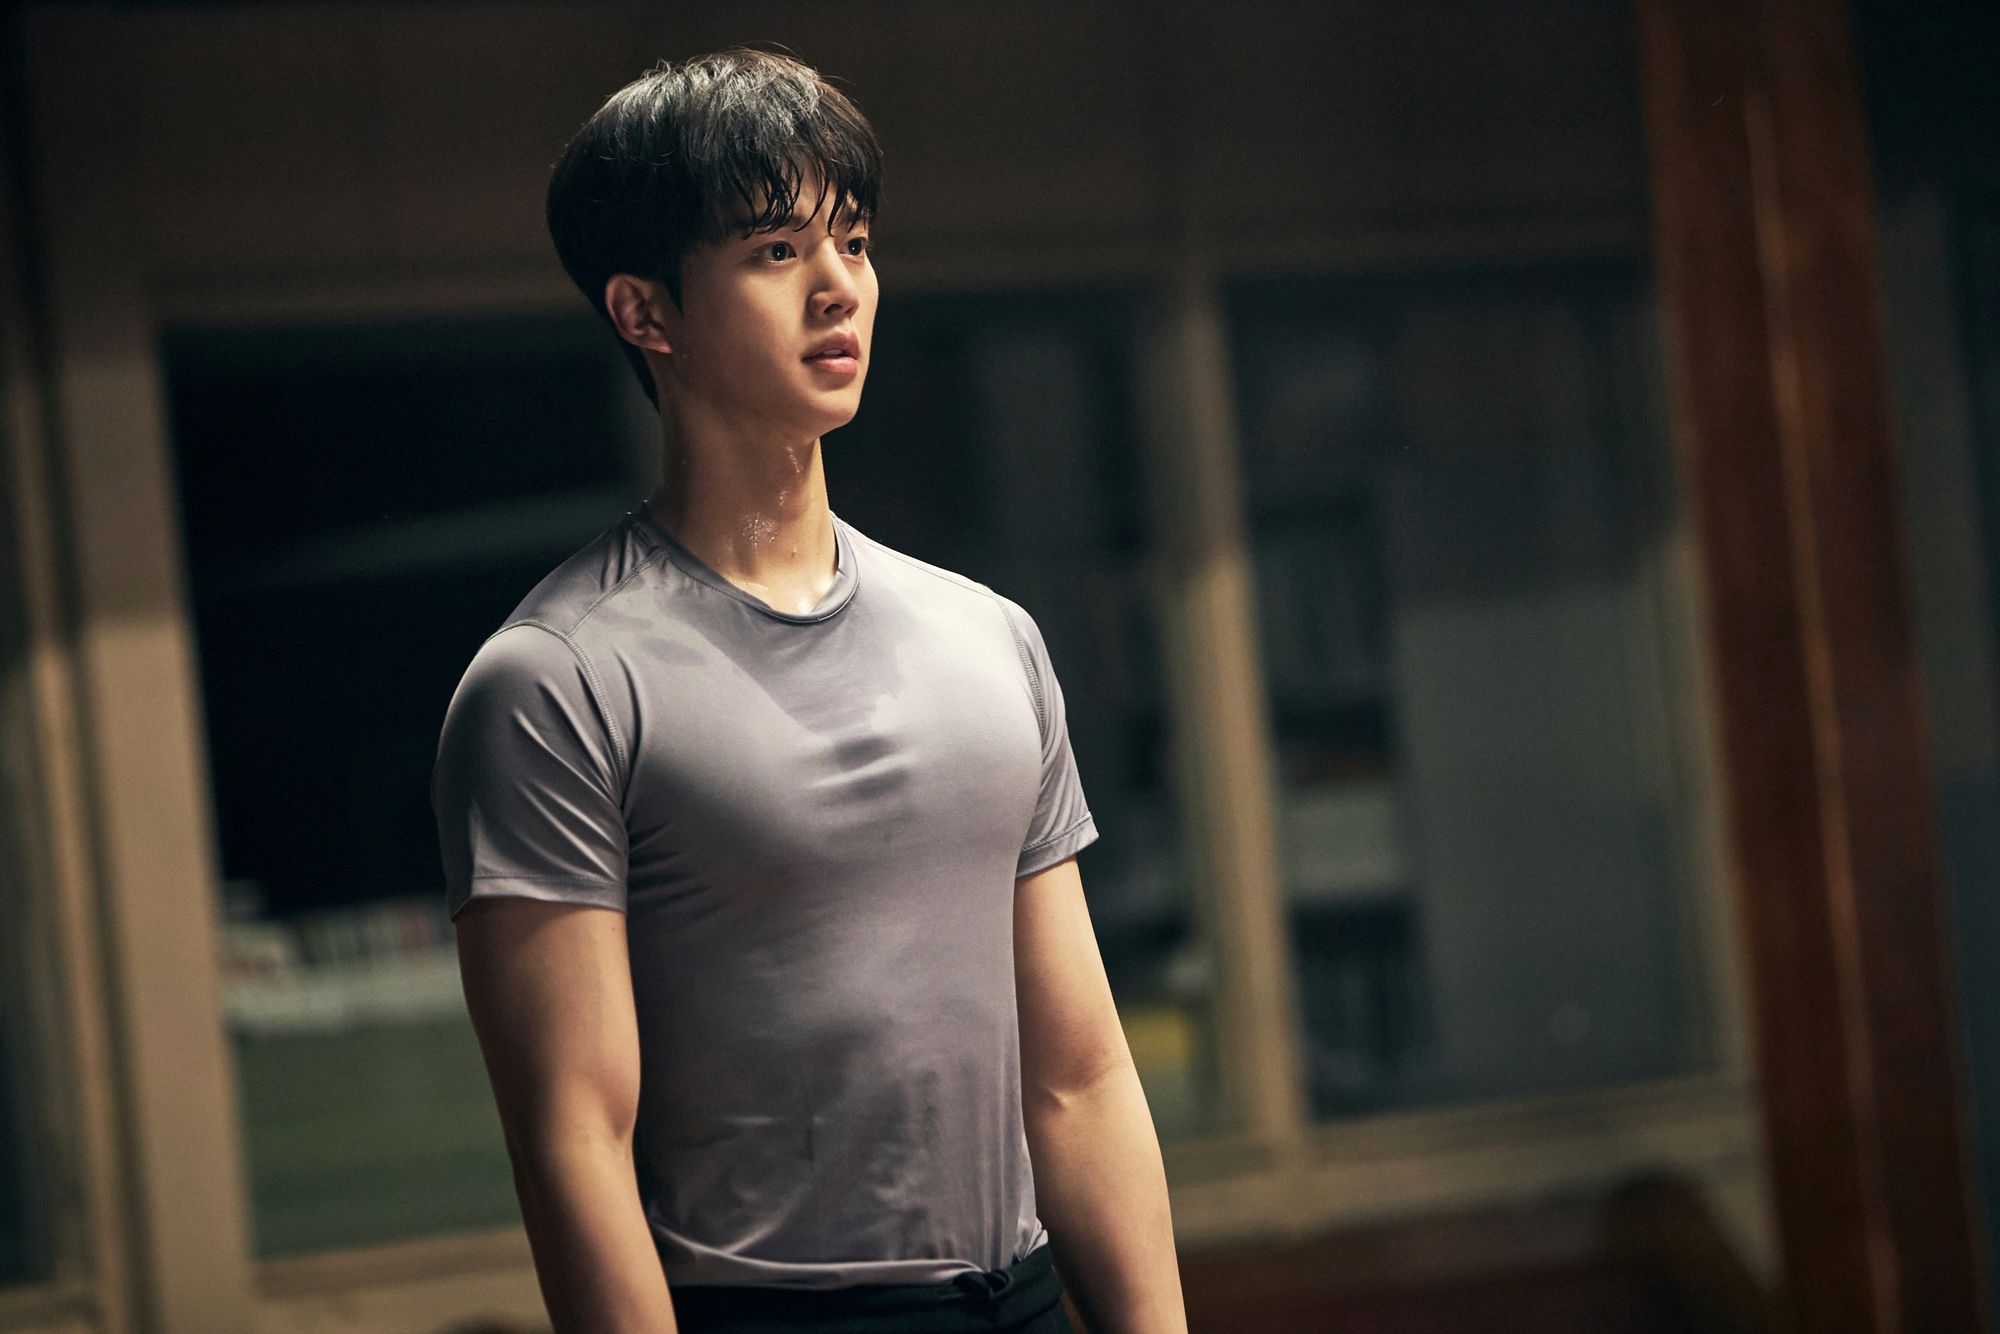 『わかっていても』で人気急上昇の韓流俳優！“Netflixの息子”ソン・ガンが魅せる「甘い童顔と分厚い胸筋」の画像